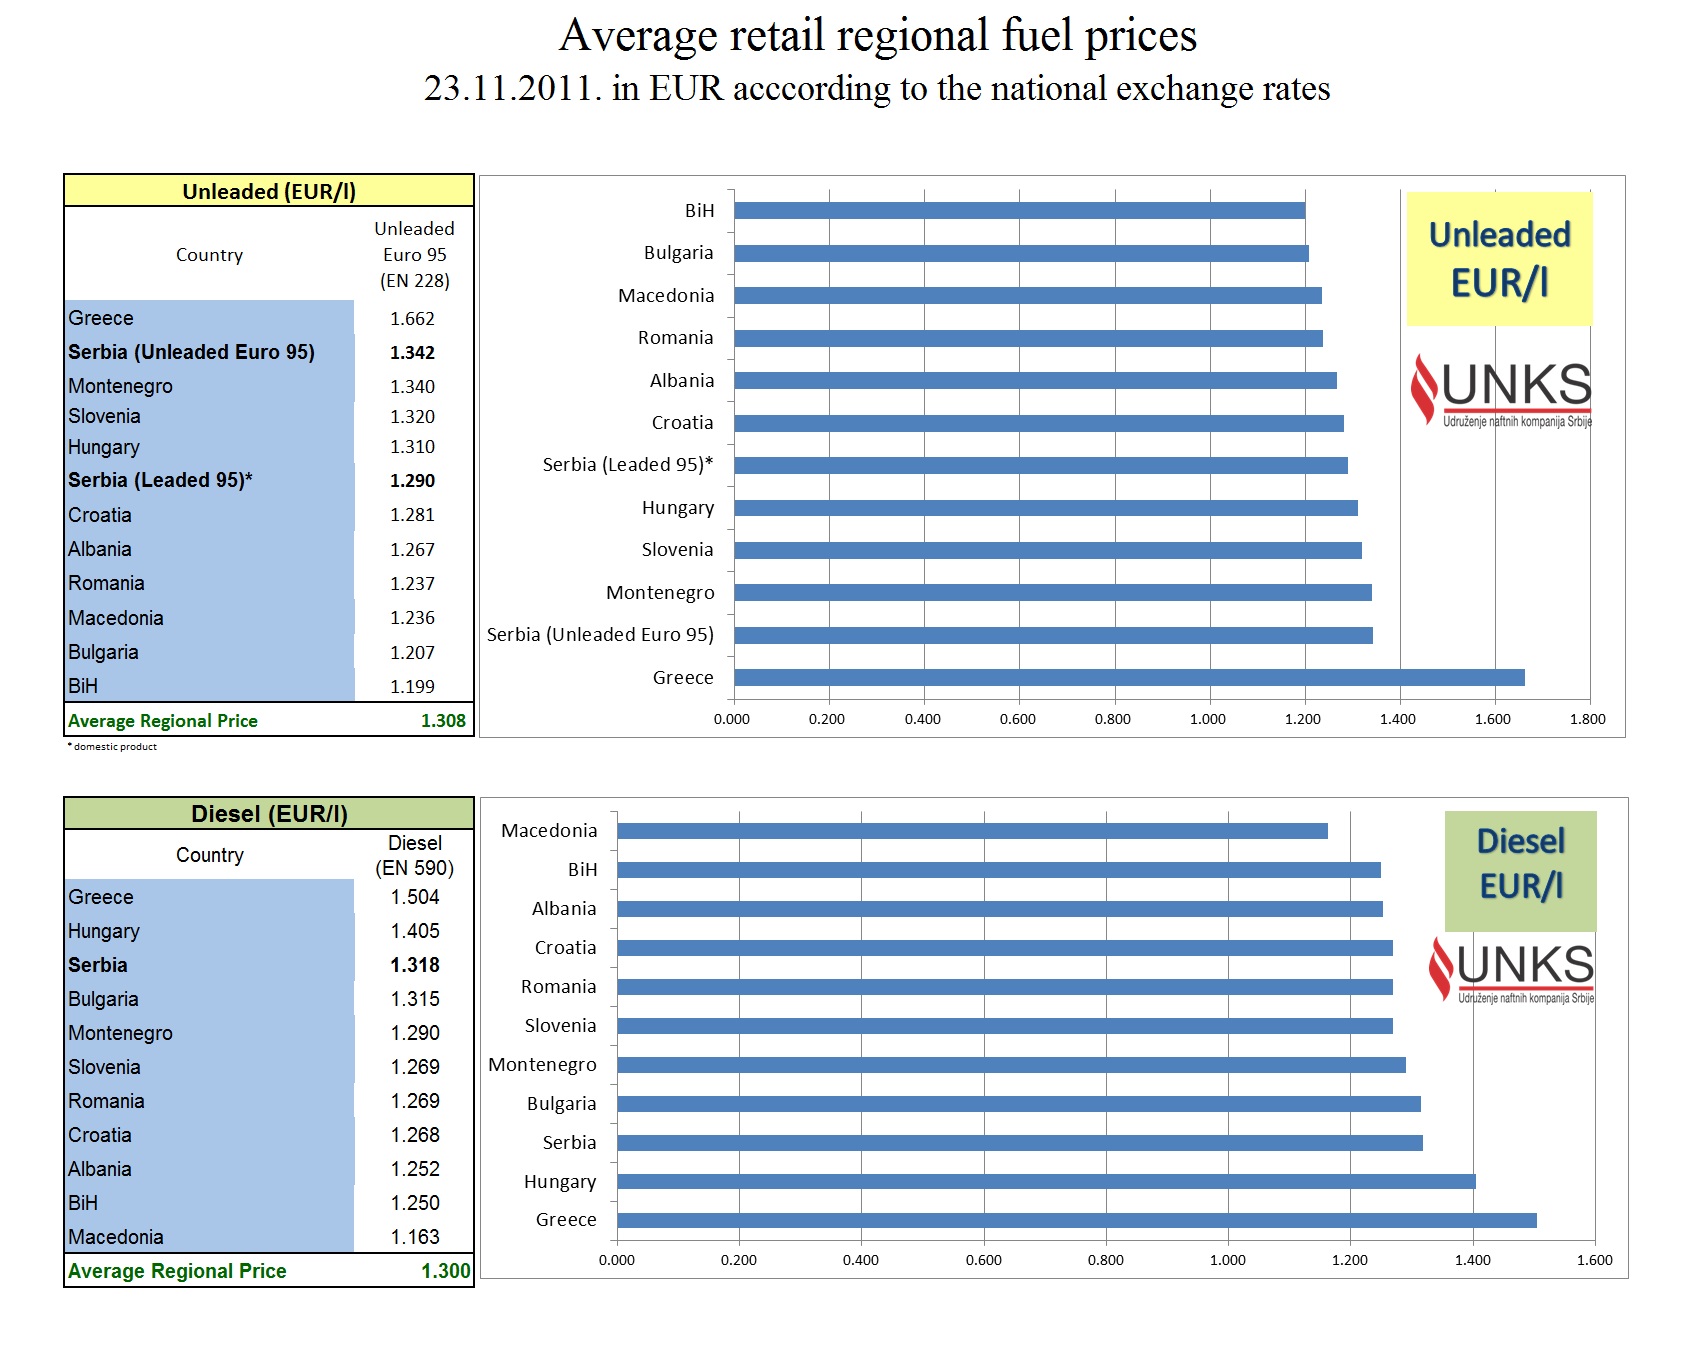 Average regional fuel retail prices